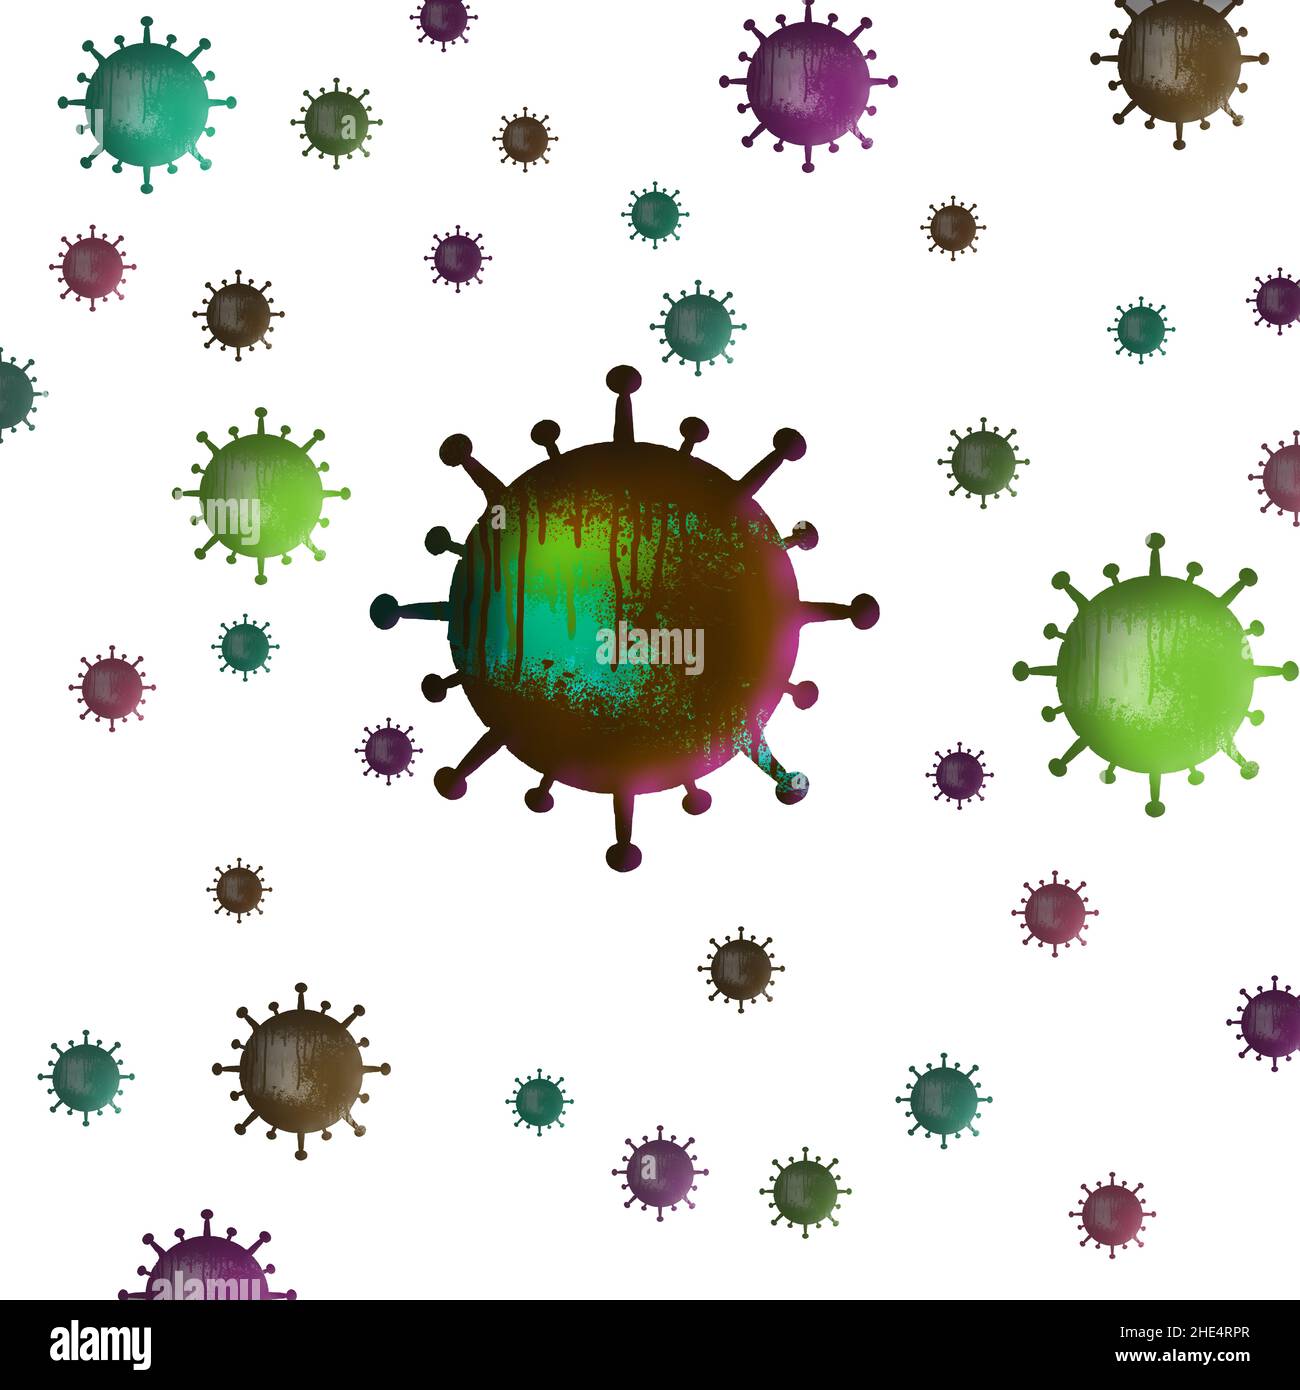 Le versioni colorate delle particelle di Coronavirus sono isolate su sfondo bianco in questa illustrazione da 3-d. Foto Stock